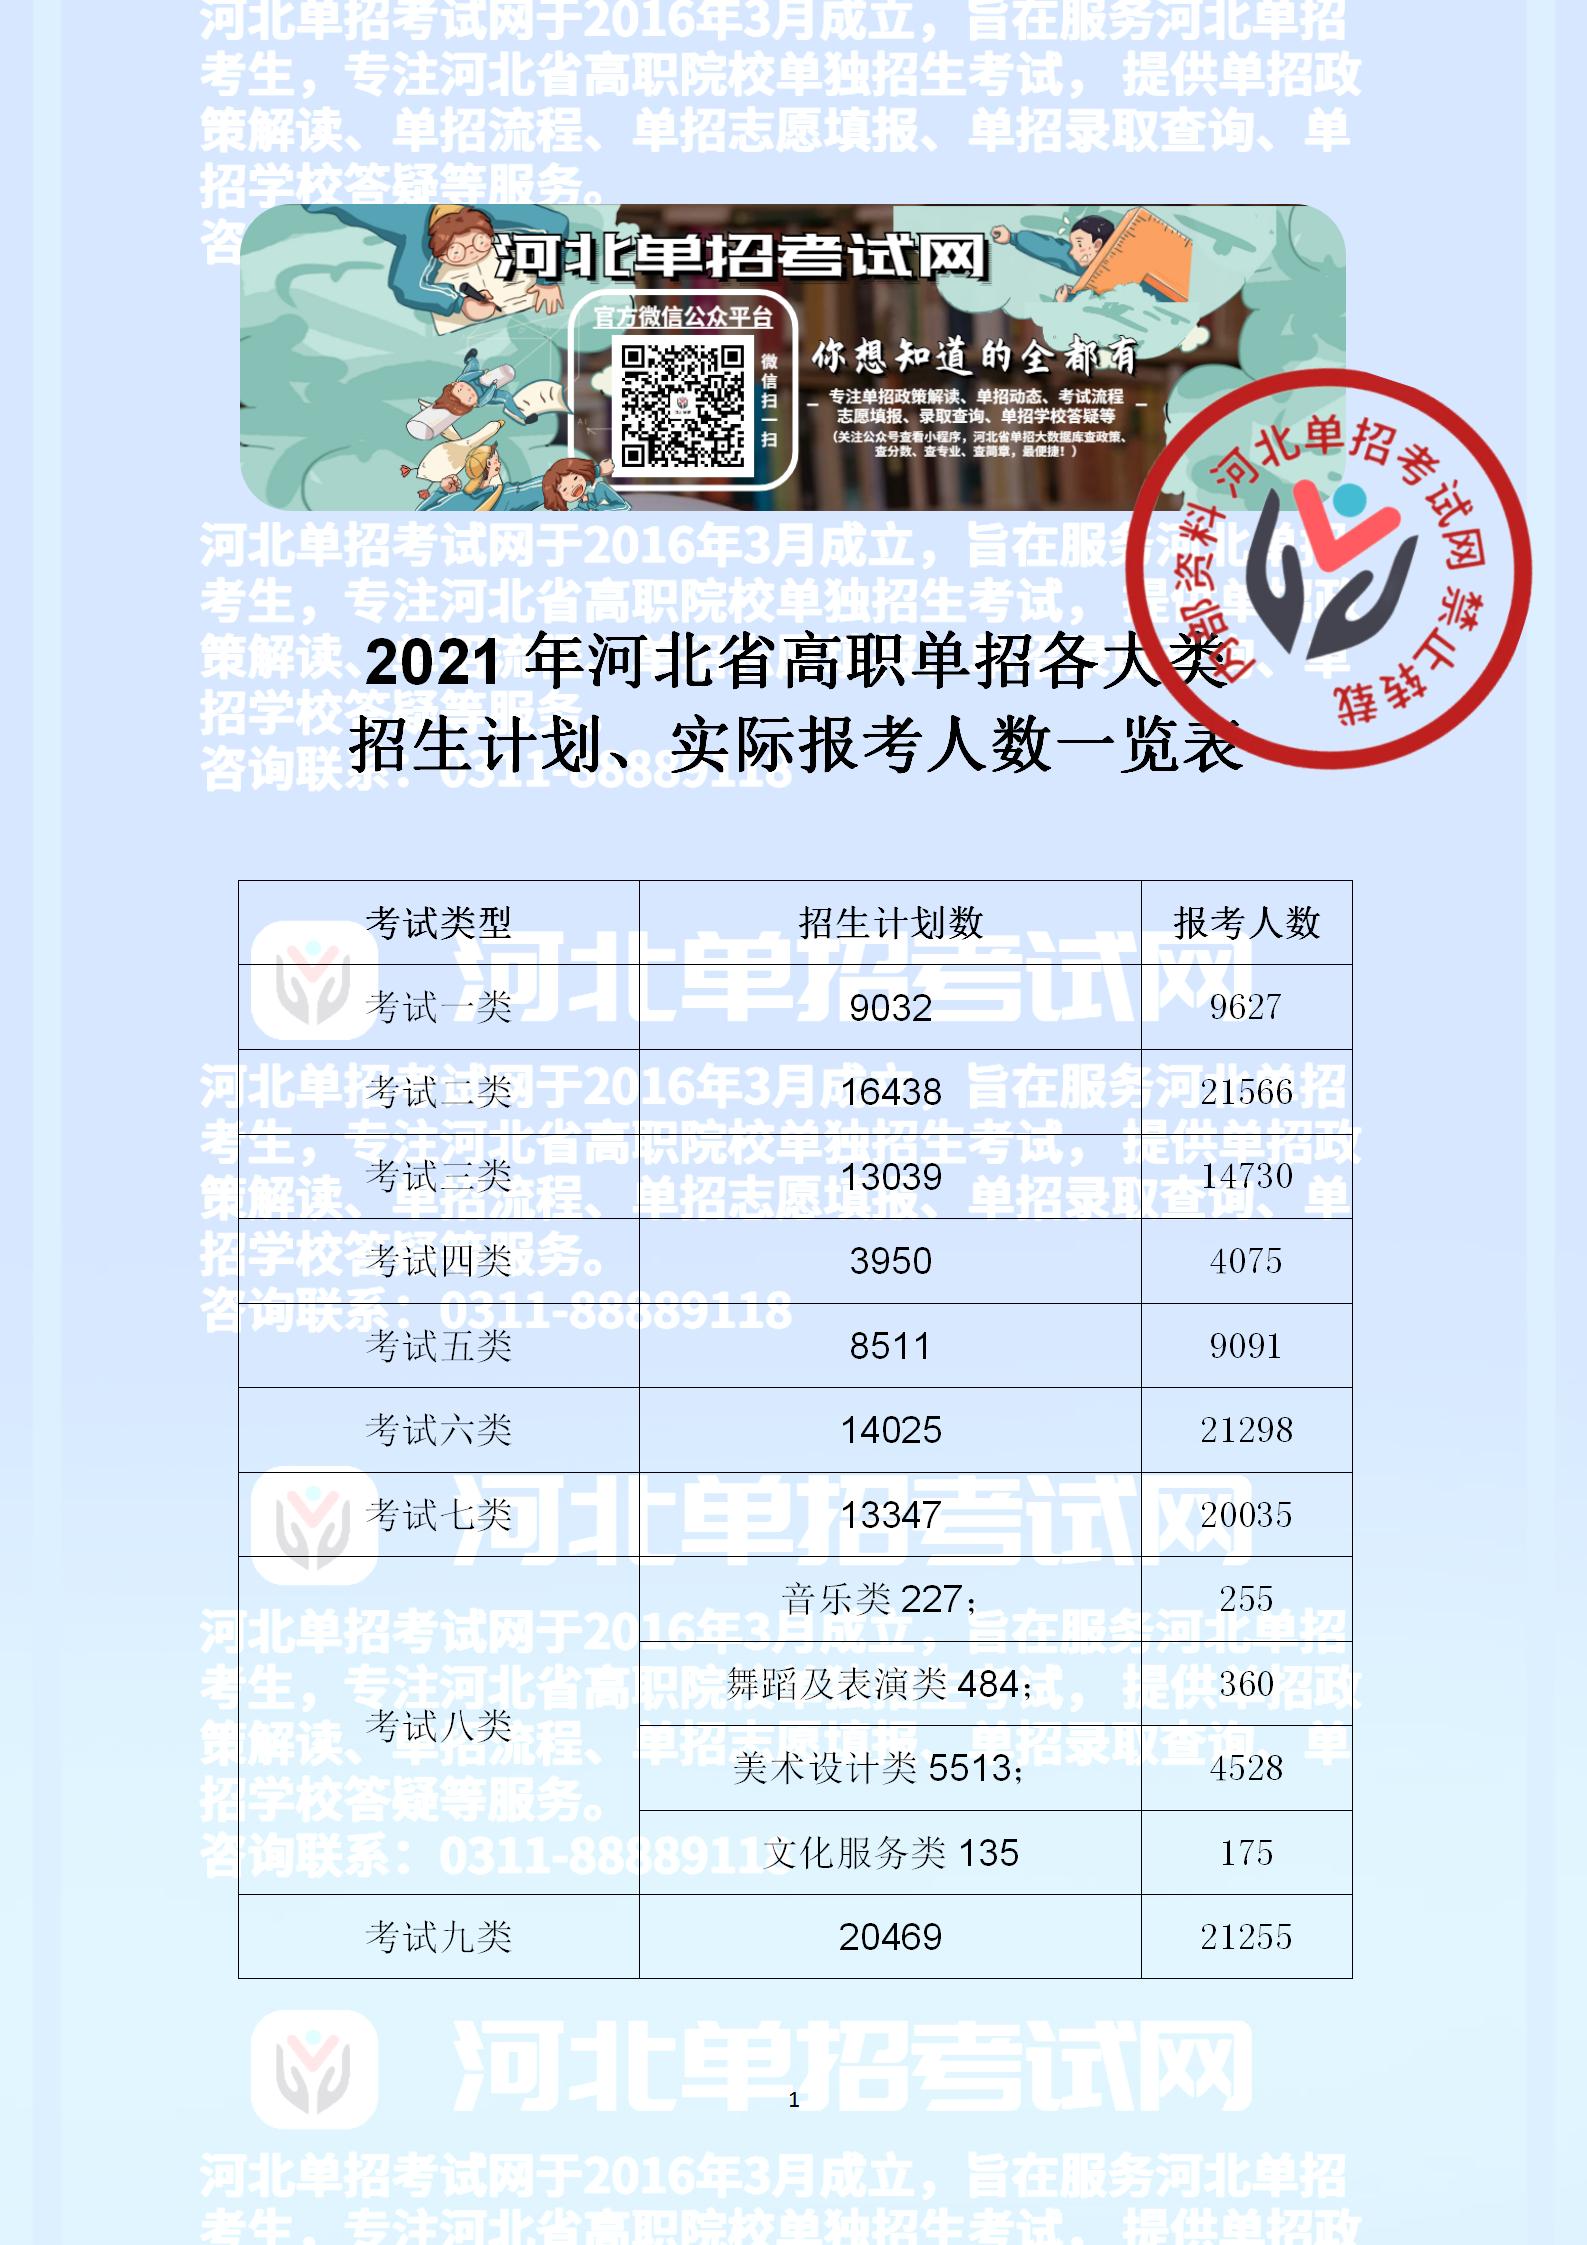 2021年河北省高职单招各大类招生计划、实际报考人数一览表副本_01.jpg